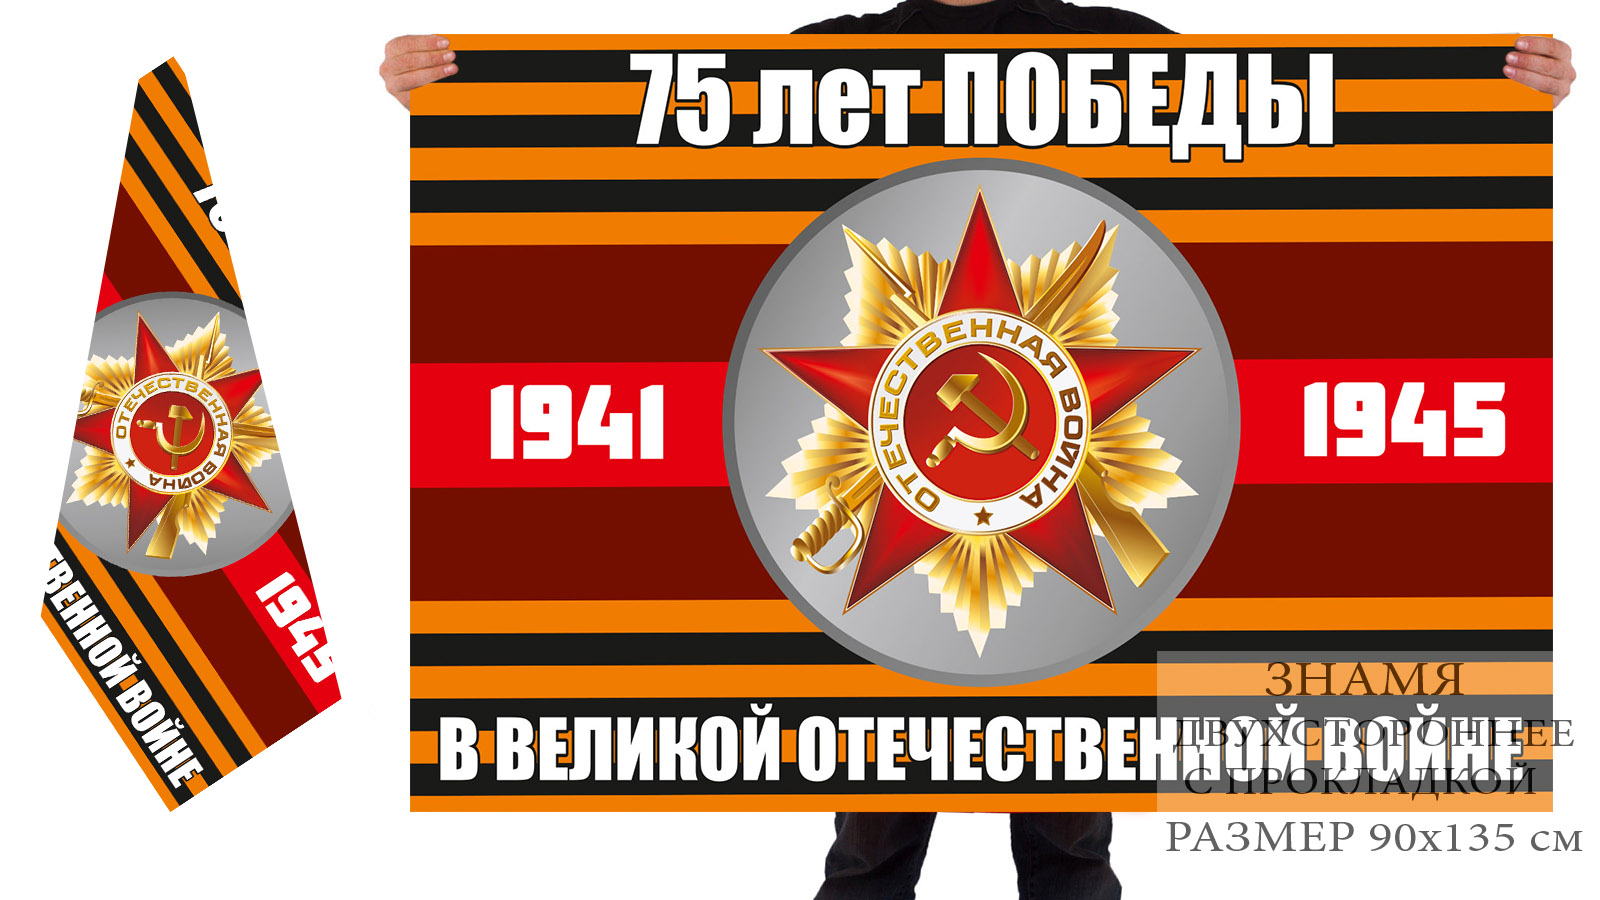 Двусторонний флаг к 9 Мая "75 лет Победы" с орденом ВОВ